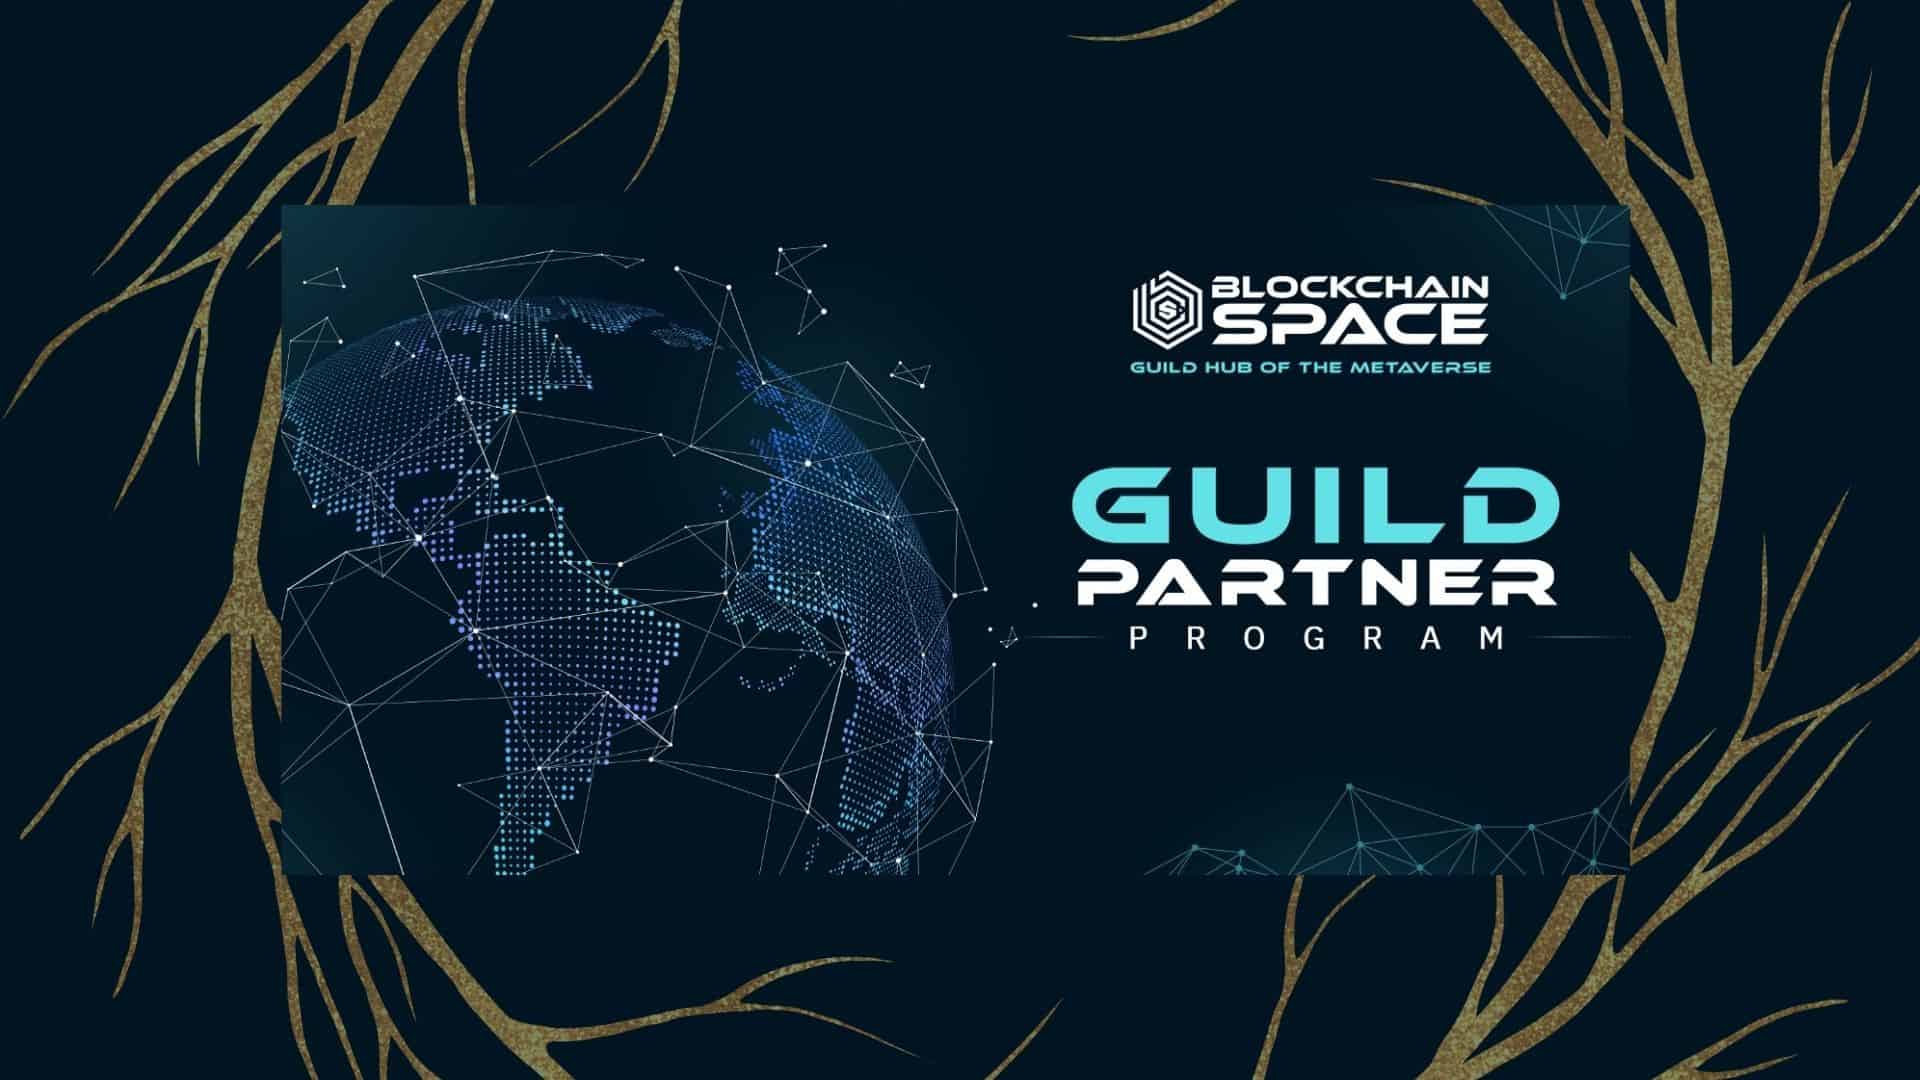 BlochchainSpace Introduces its Guild Partner Program